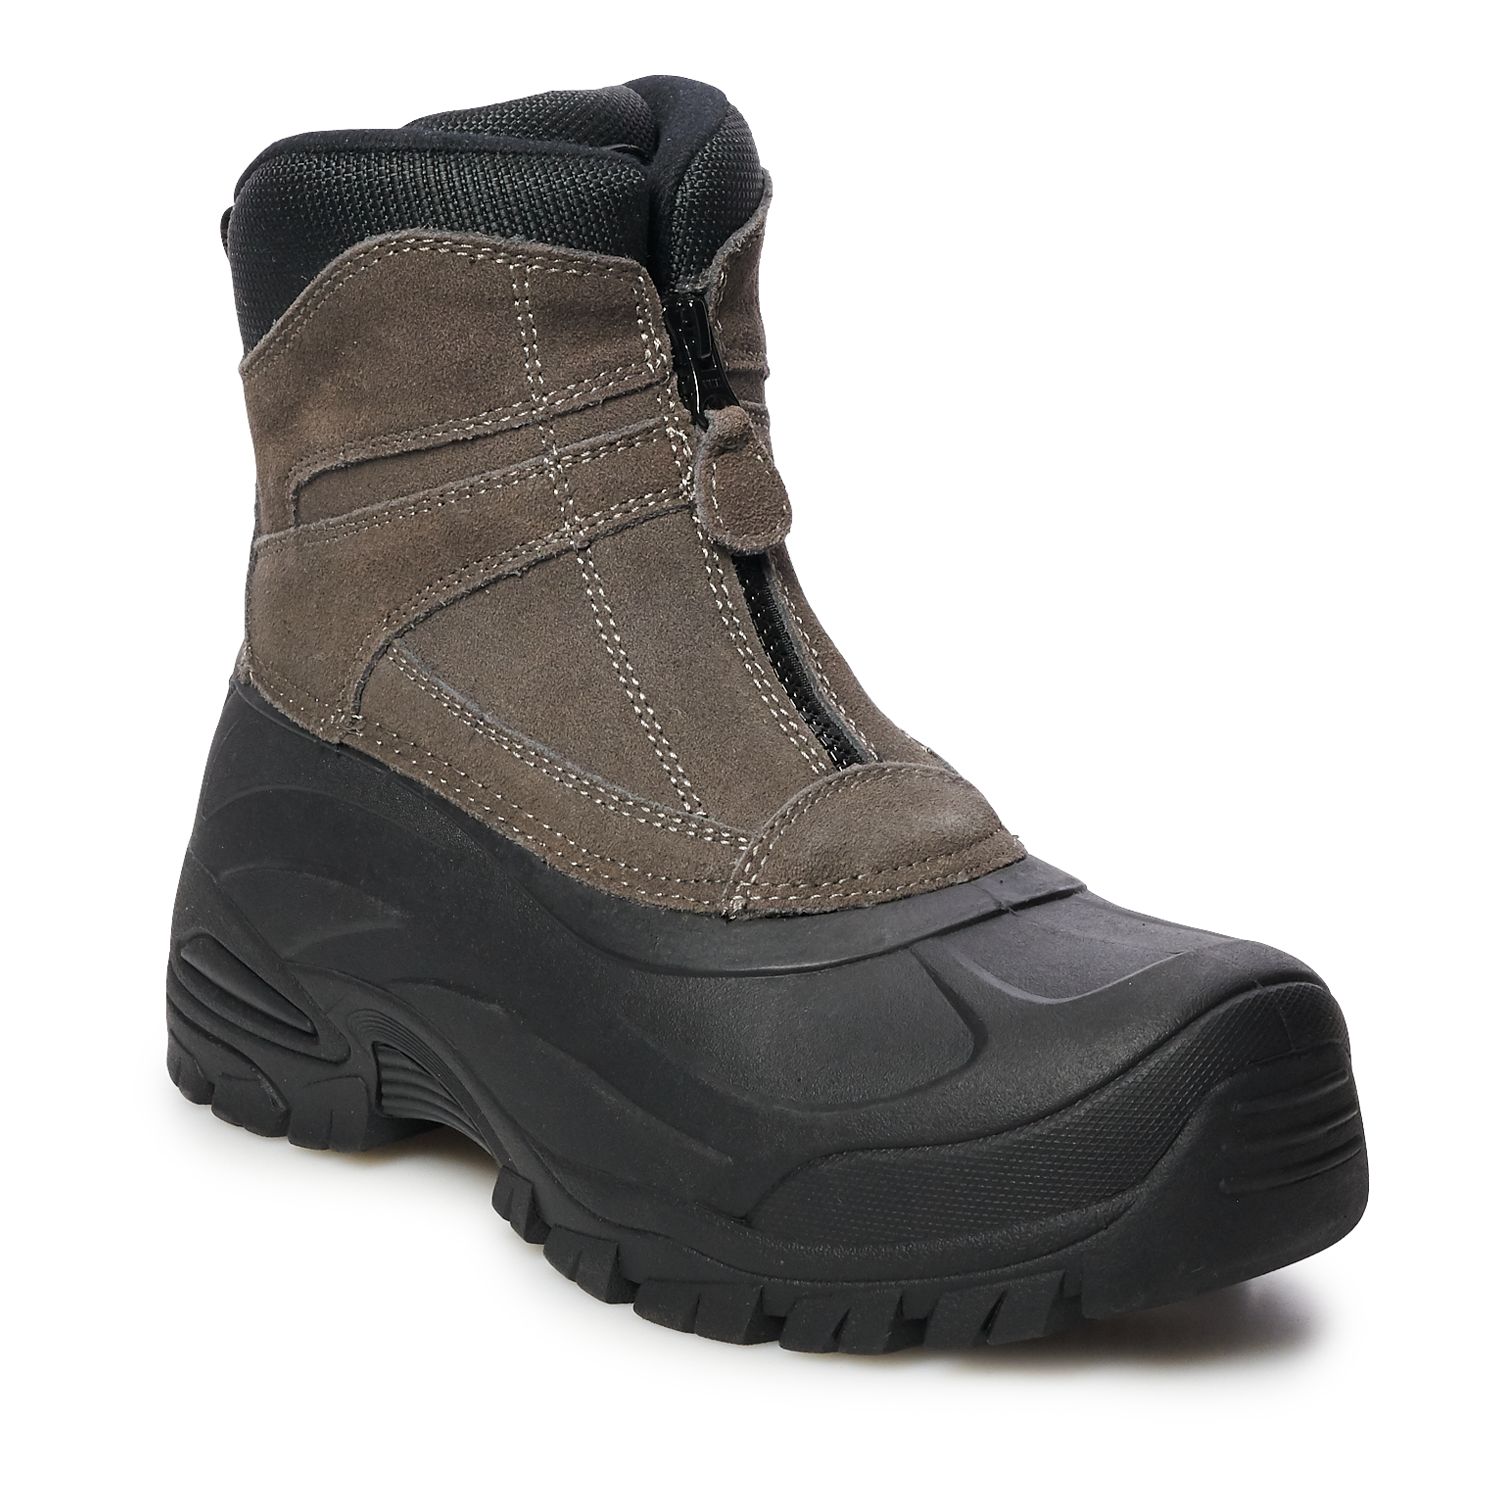 mens boots waterproof winter